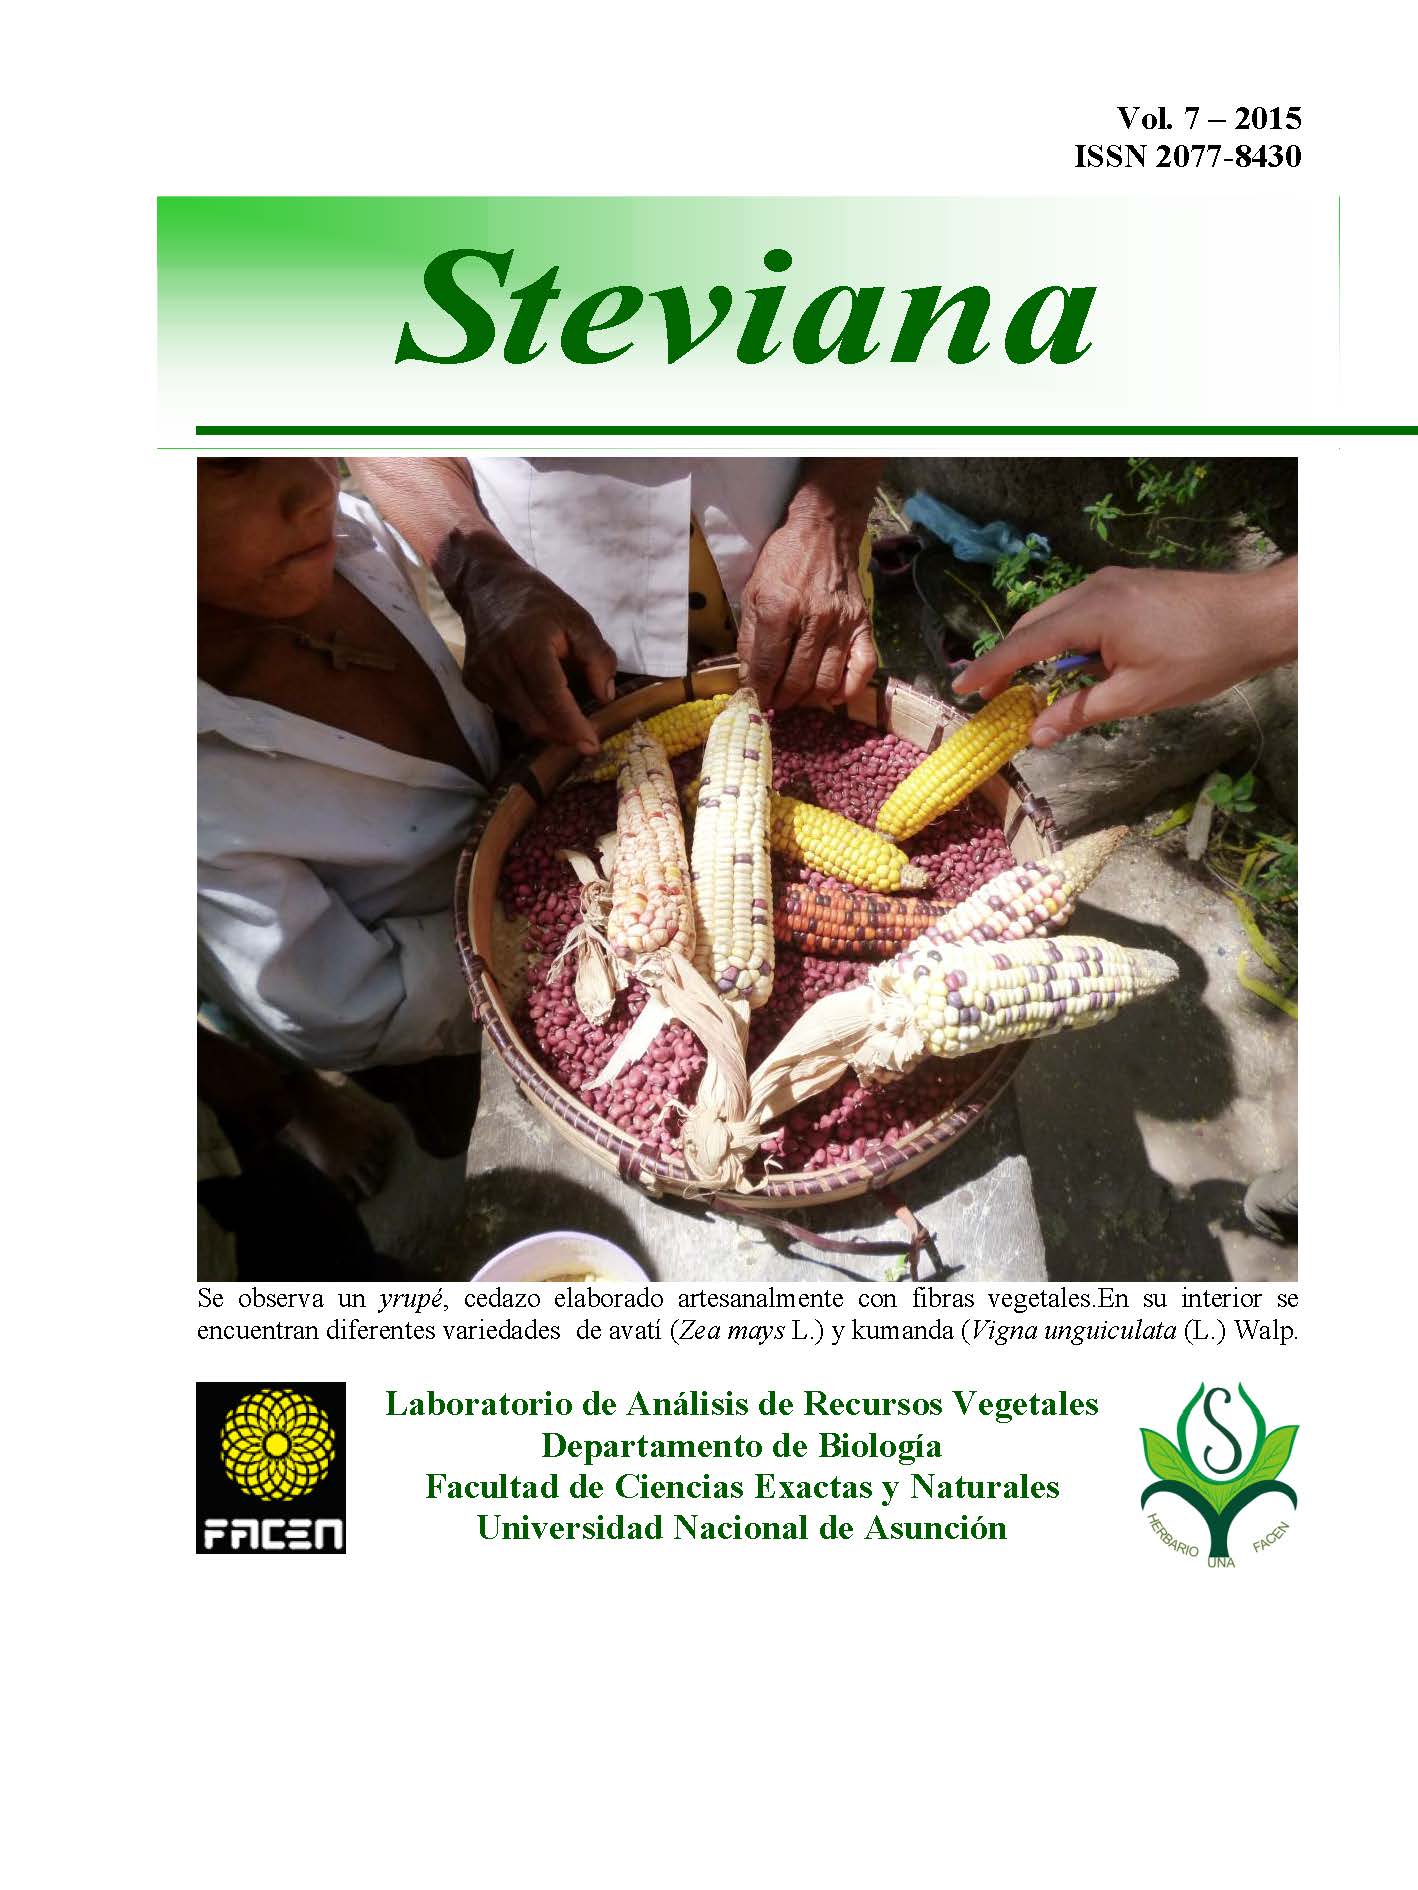 					Ver Vol. 7 (2015): Steviana
				